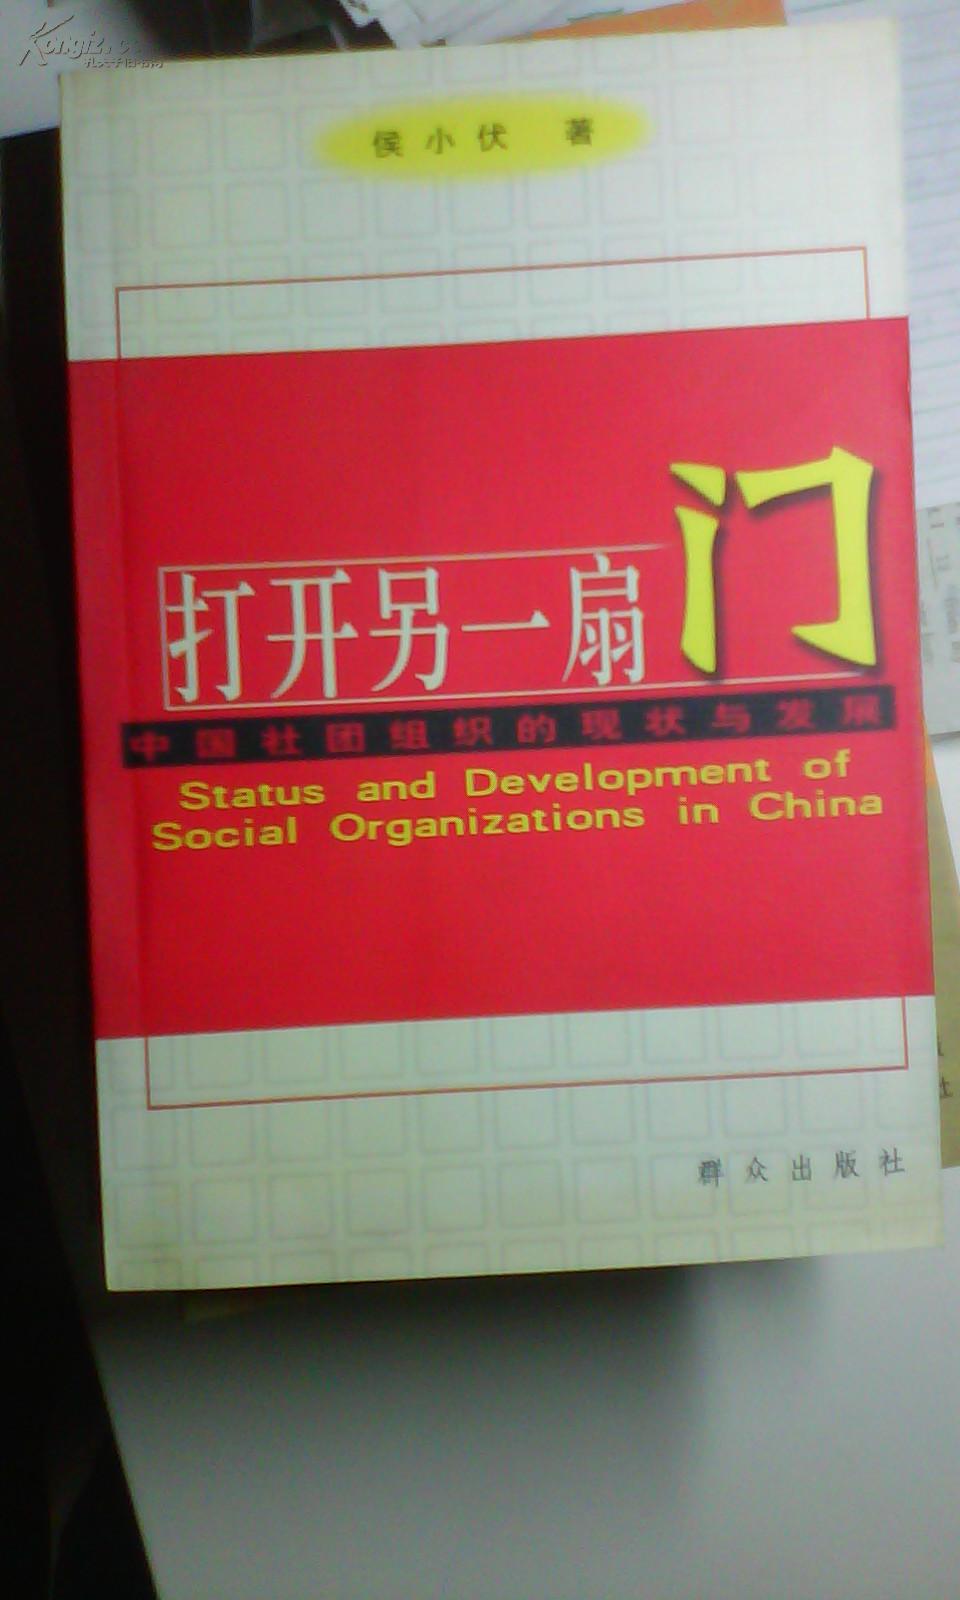 打开另一扇门:中国社团组织的现状与发展（作者签赠本）